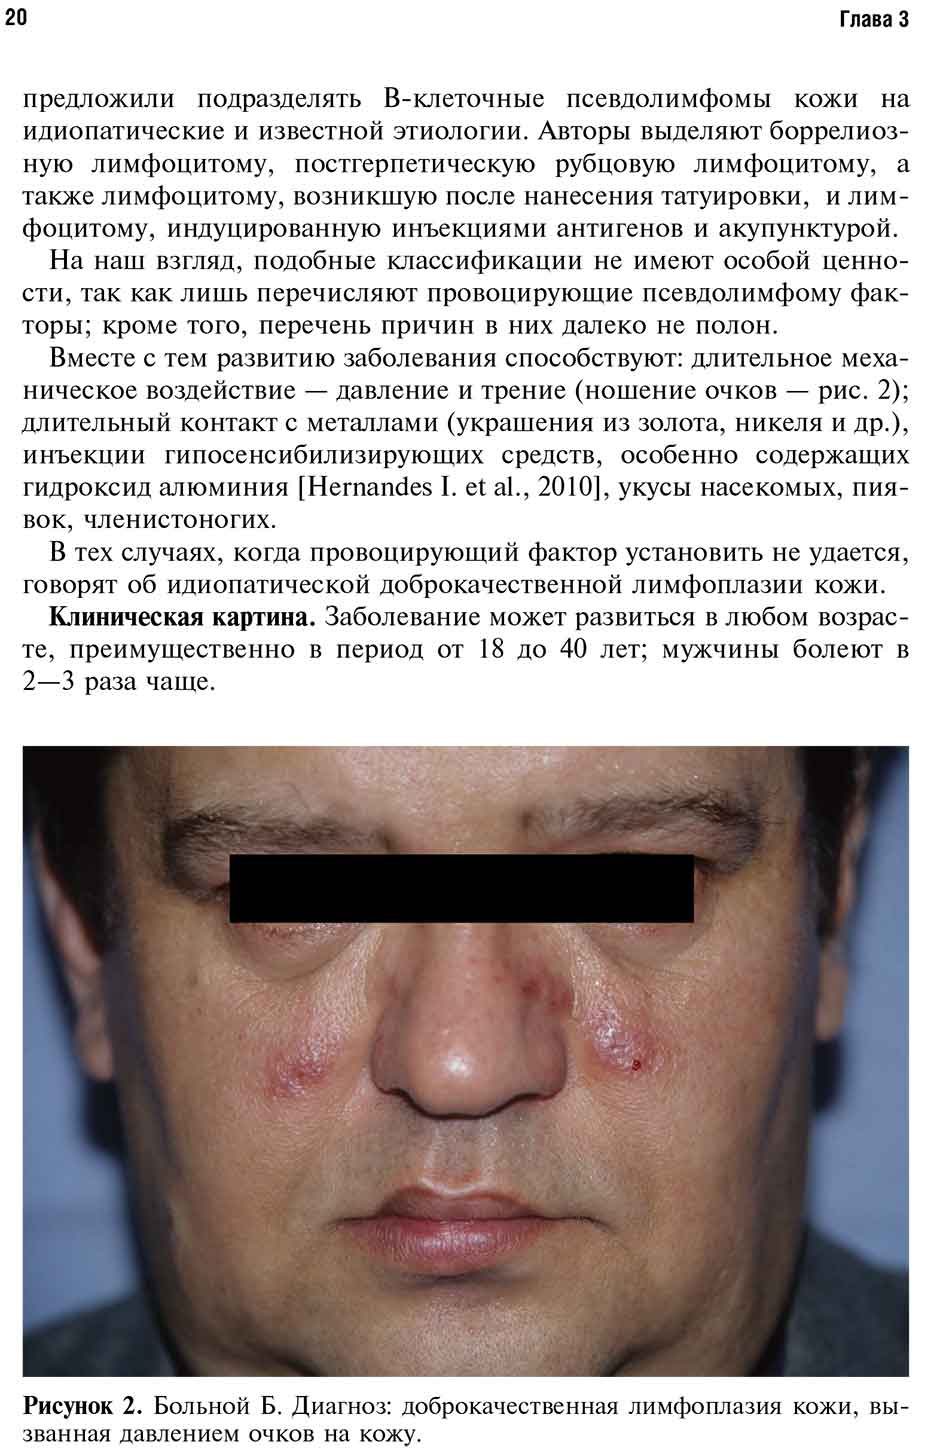 Рисунок 2. Больной Б. Диагноз: доброкачественная лимфоплазия кожи